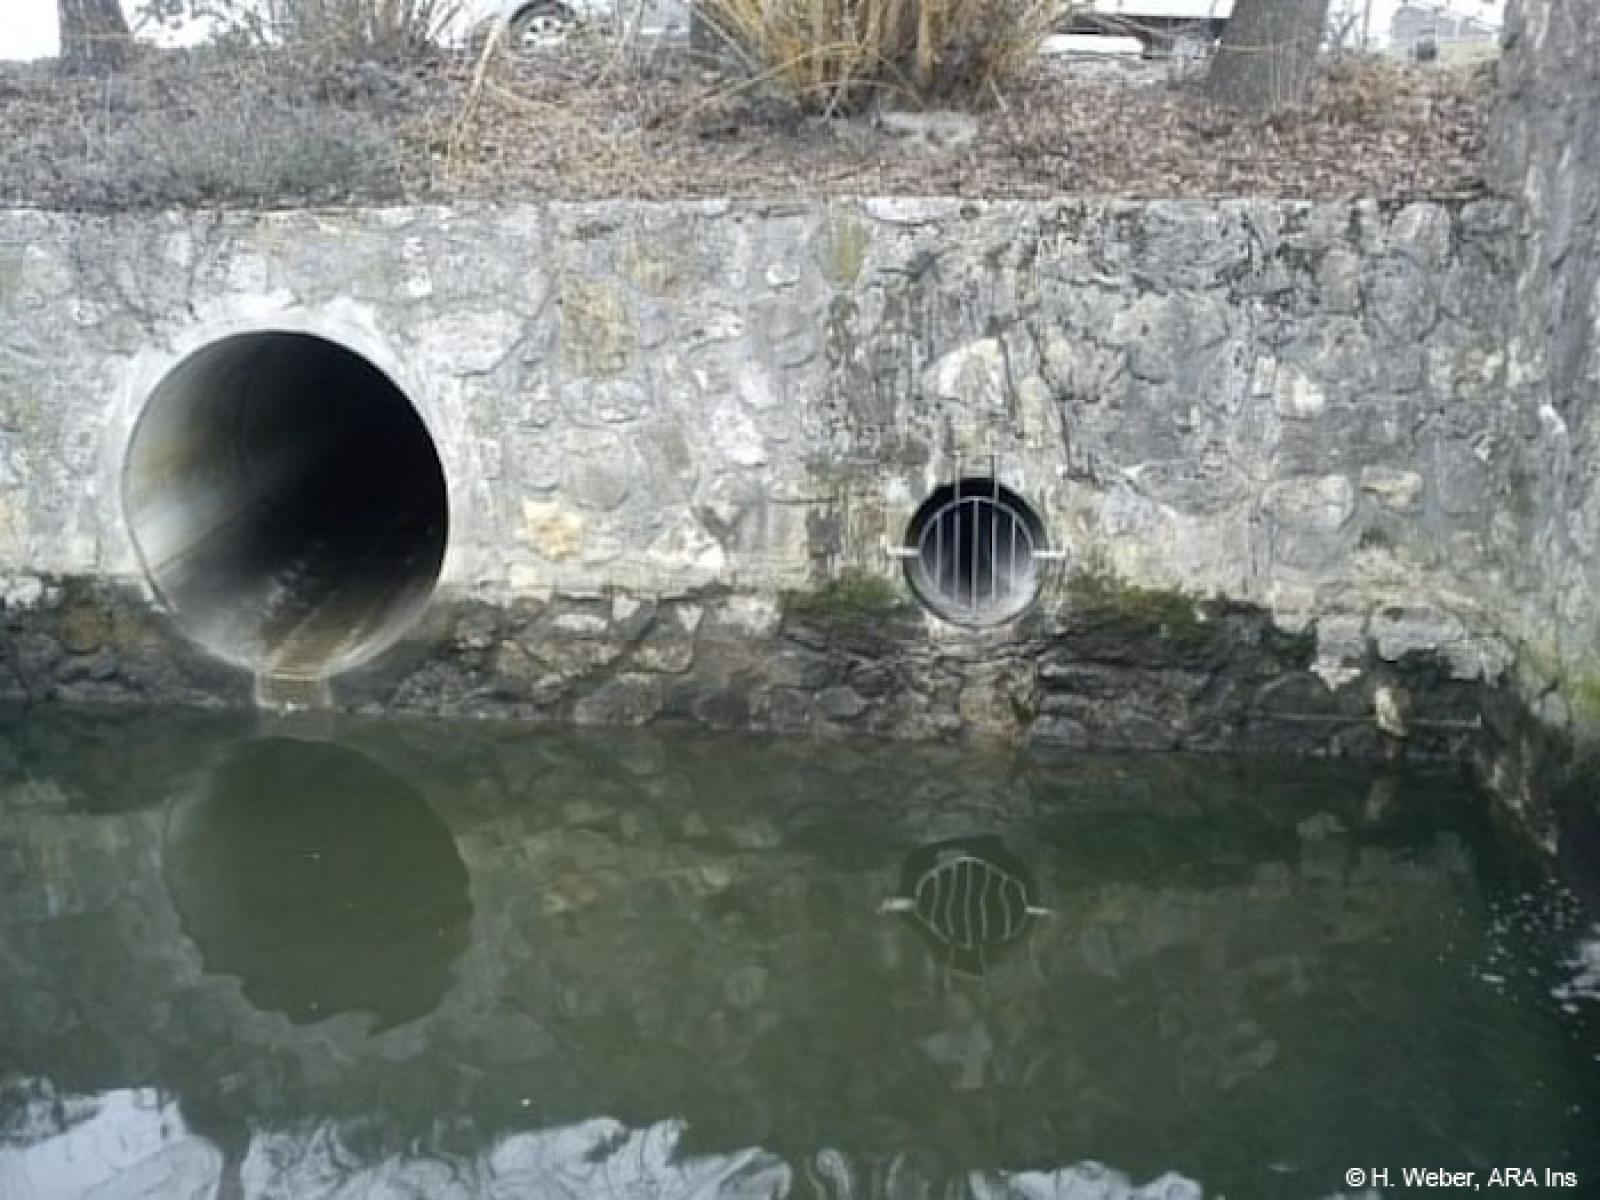  Installiertes Gitter beim Überlauf des ARA-Auslaufs (rechts). Links: Meteorwasserleitung der Gemeinde Ins